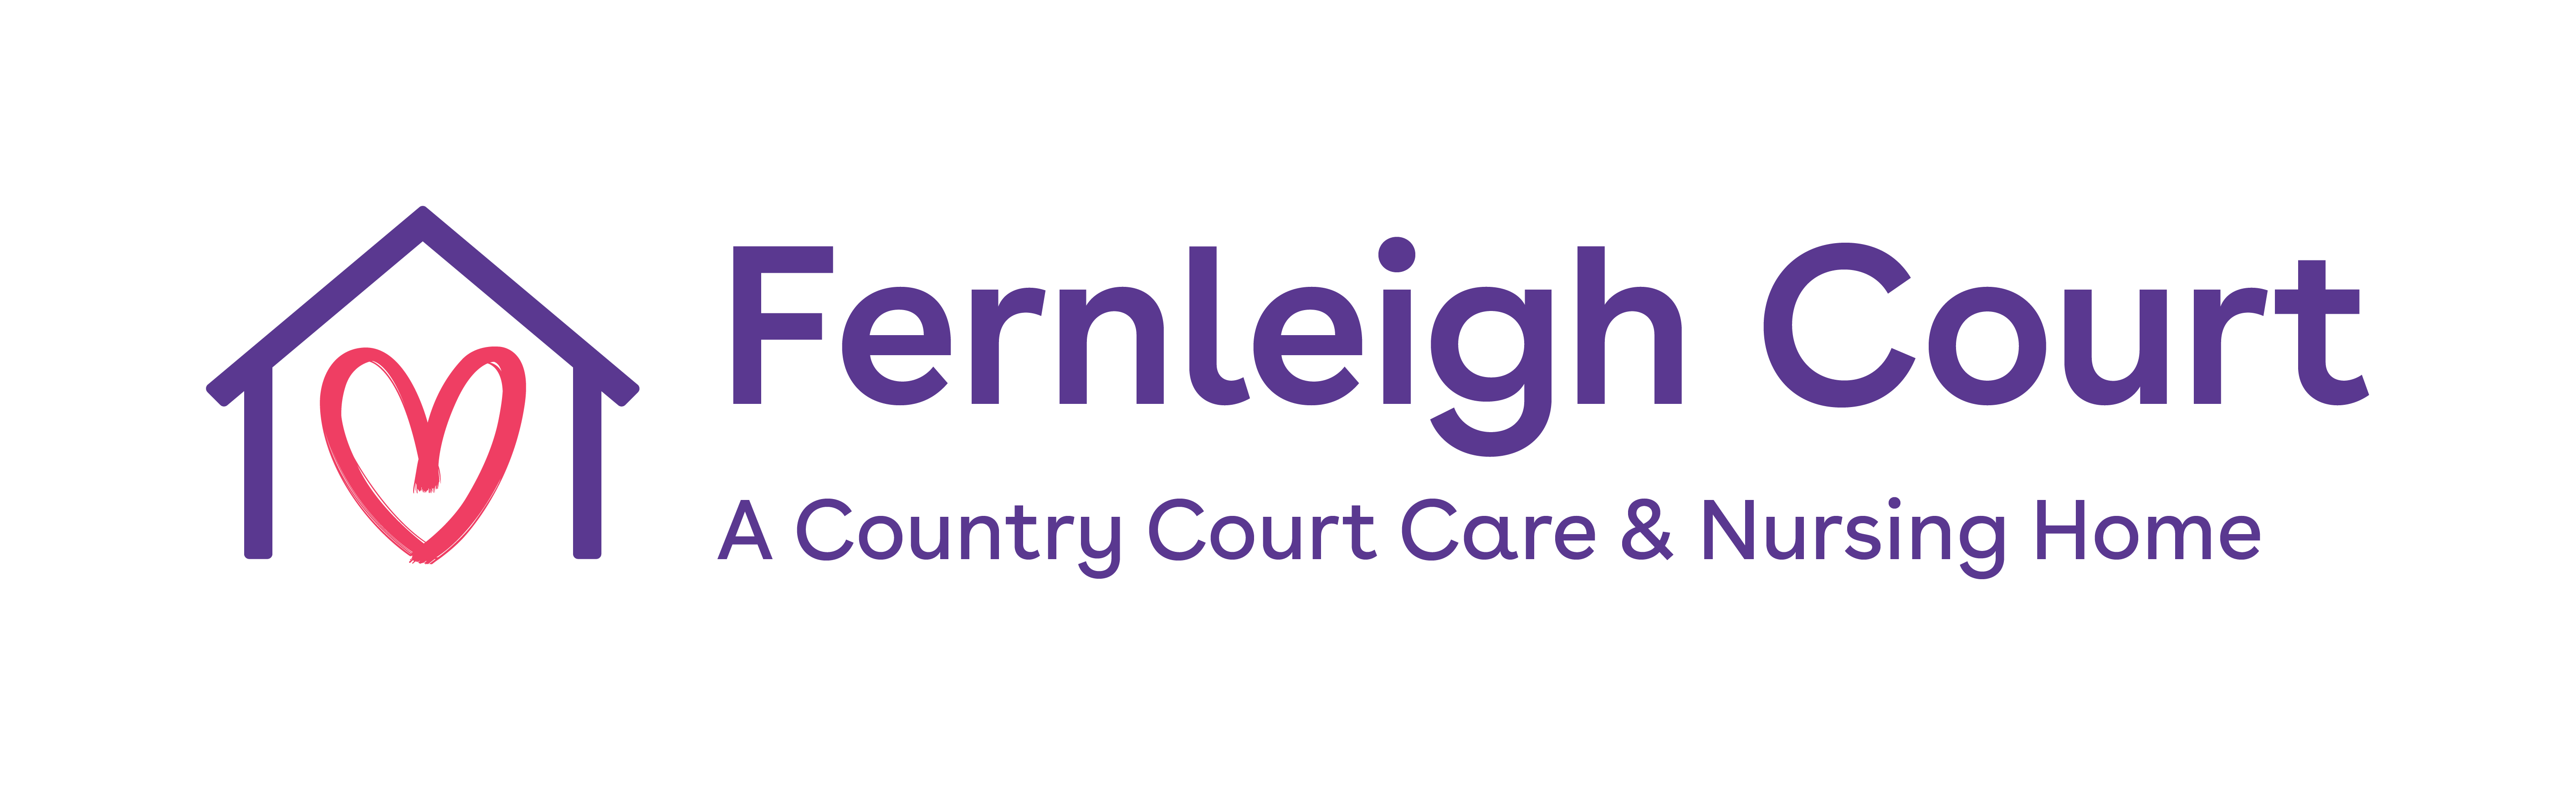 Fernleigh Court Care & Nursing Home logo